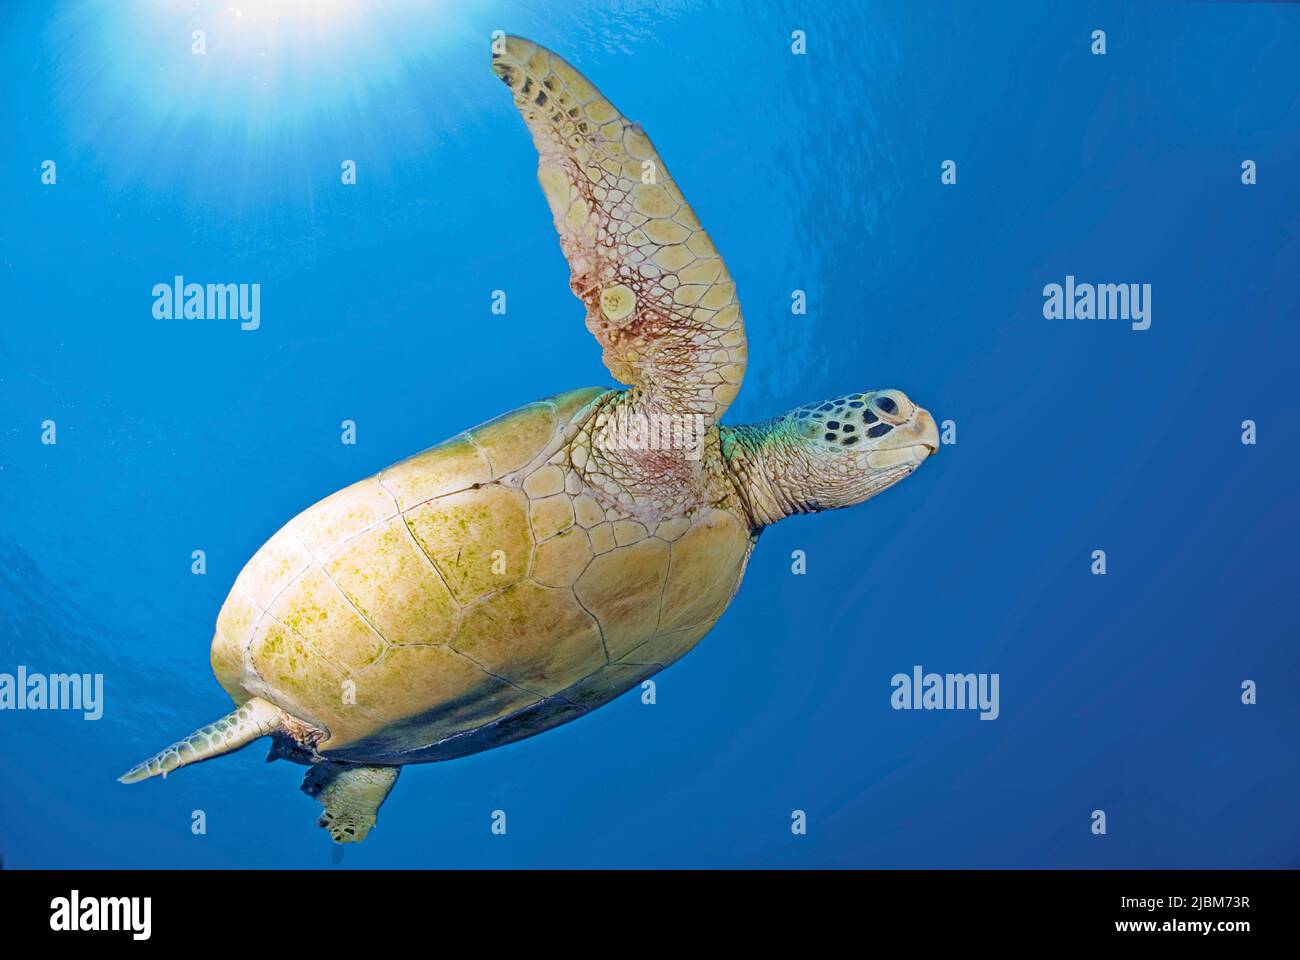 Green Turtle or Green Sea Turtle (Chelonia mydas), awimming in blue water, Sipadan, Sabah, Borneo, Malaysia, Asia Stock Photo